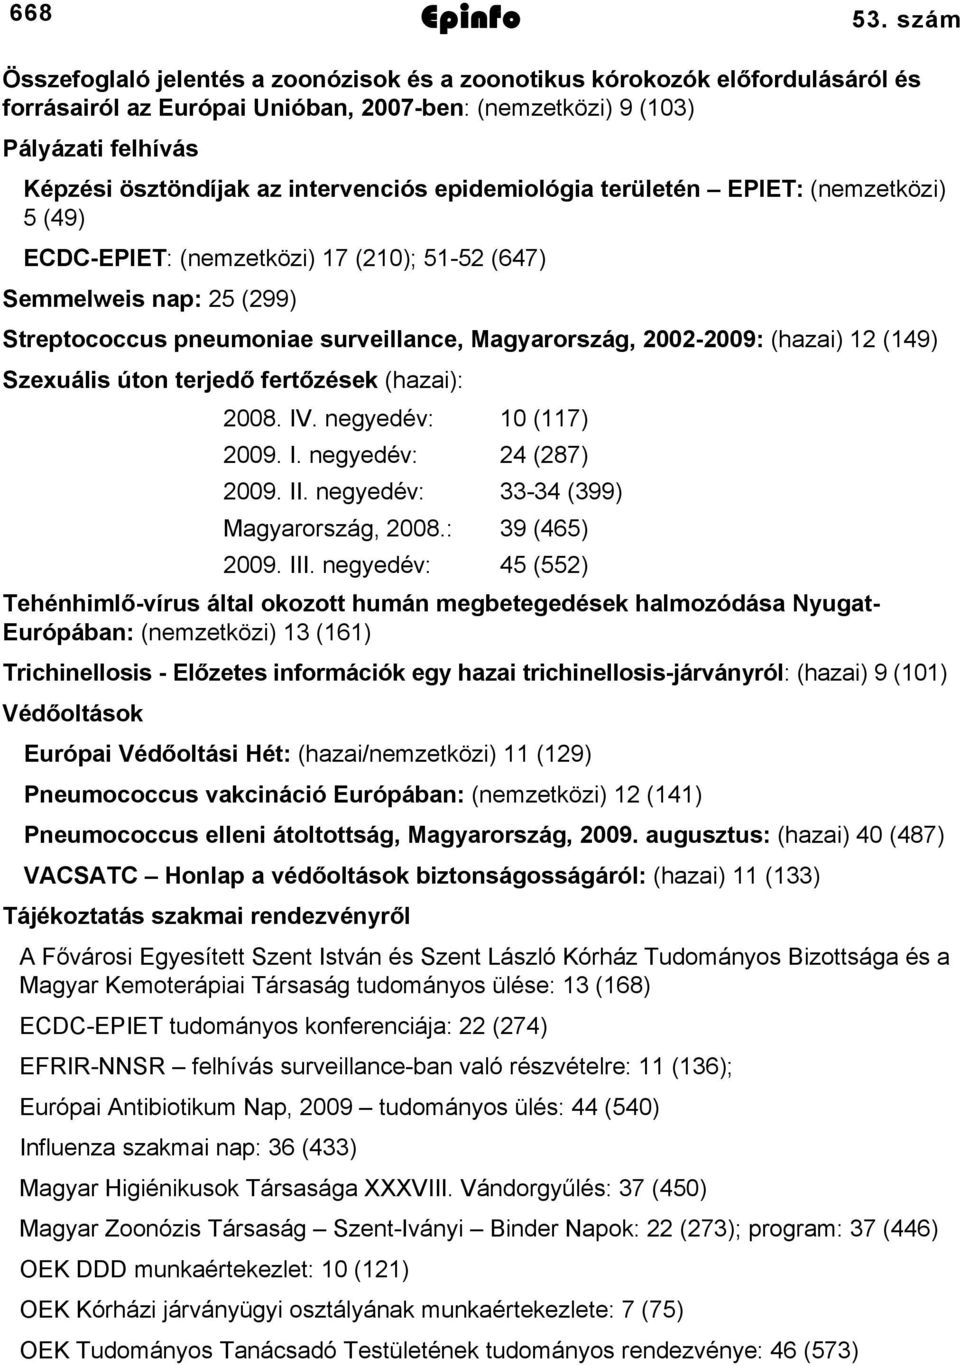 epidemiológia területén EPIET: (nemzetközi) 5 (49) ECDCEPIET: (nemzetközi) 7 (0); 55 (647) Semmelweis nap: 5 (99) Streptococcus pneumoniae surveillance, Magyarország, 00009: (hazai) (49) Szexuális